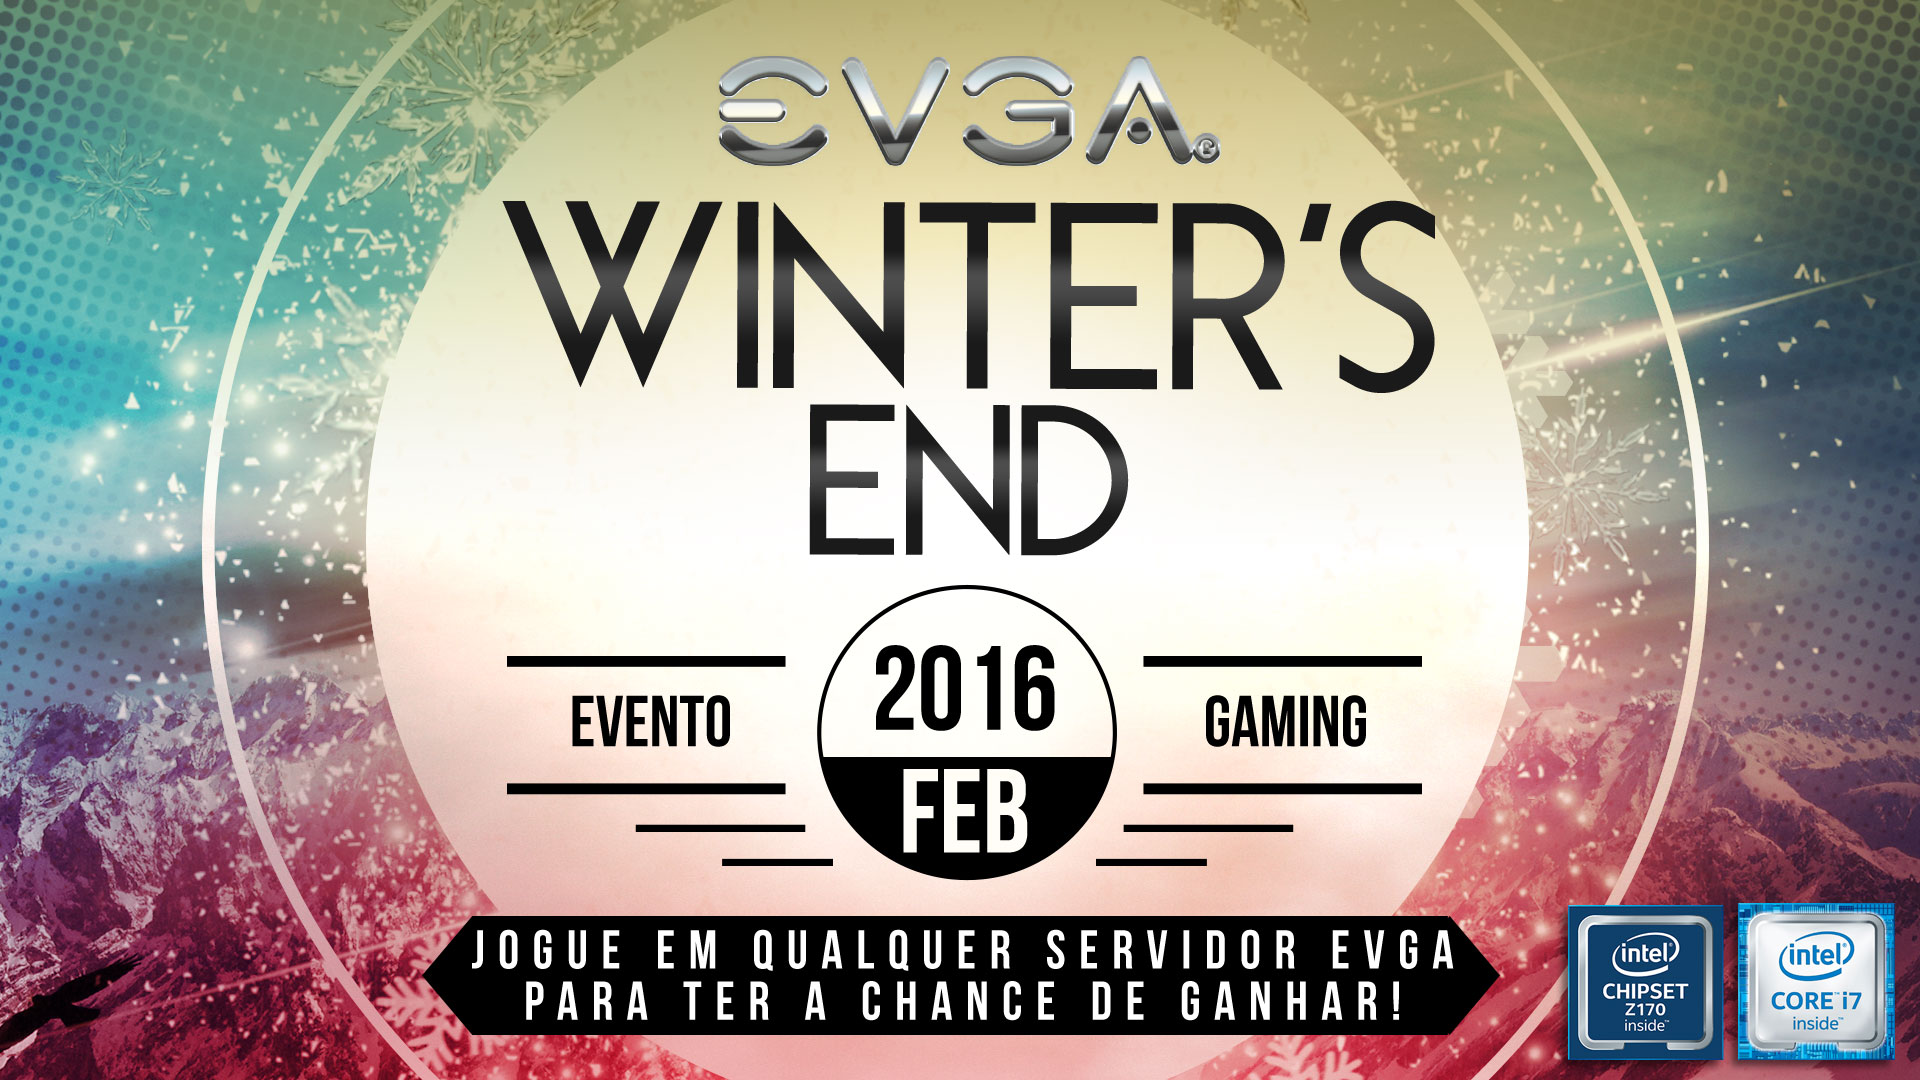 EVGA Gaming Header